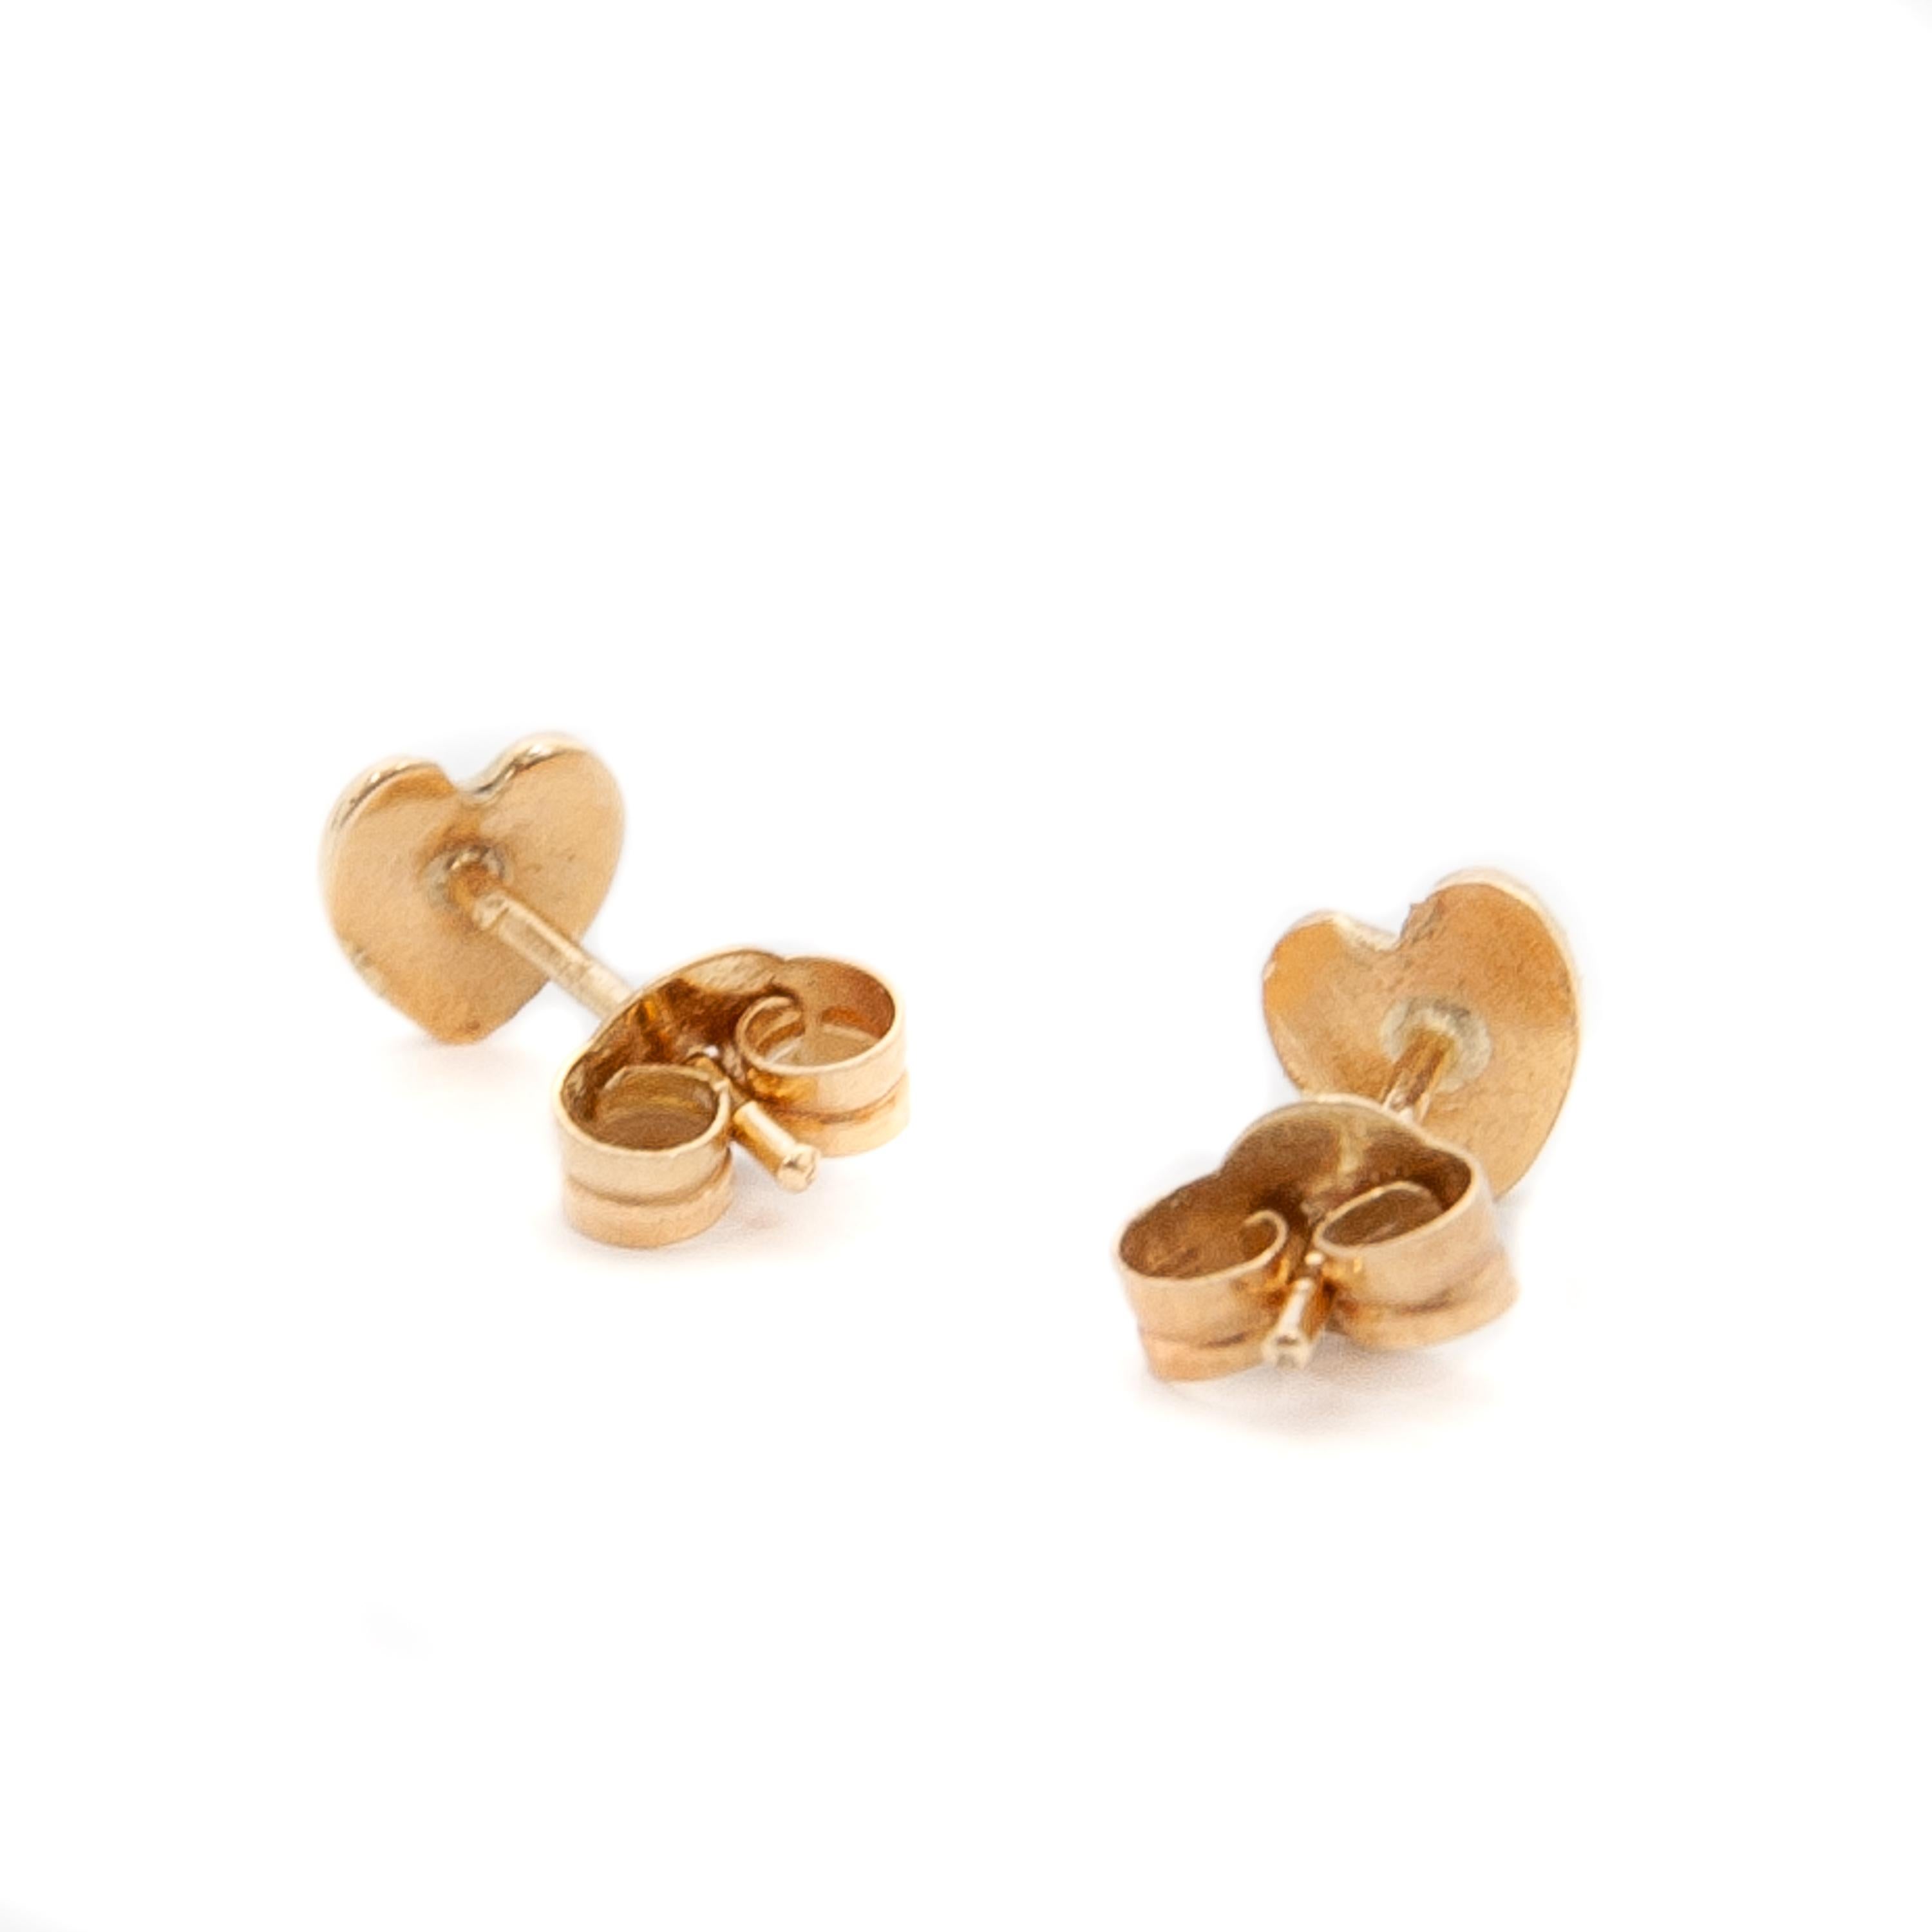 14k gold heart shaped earrings